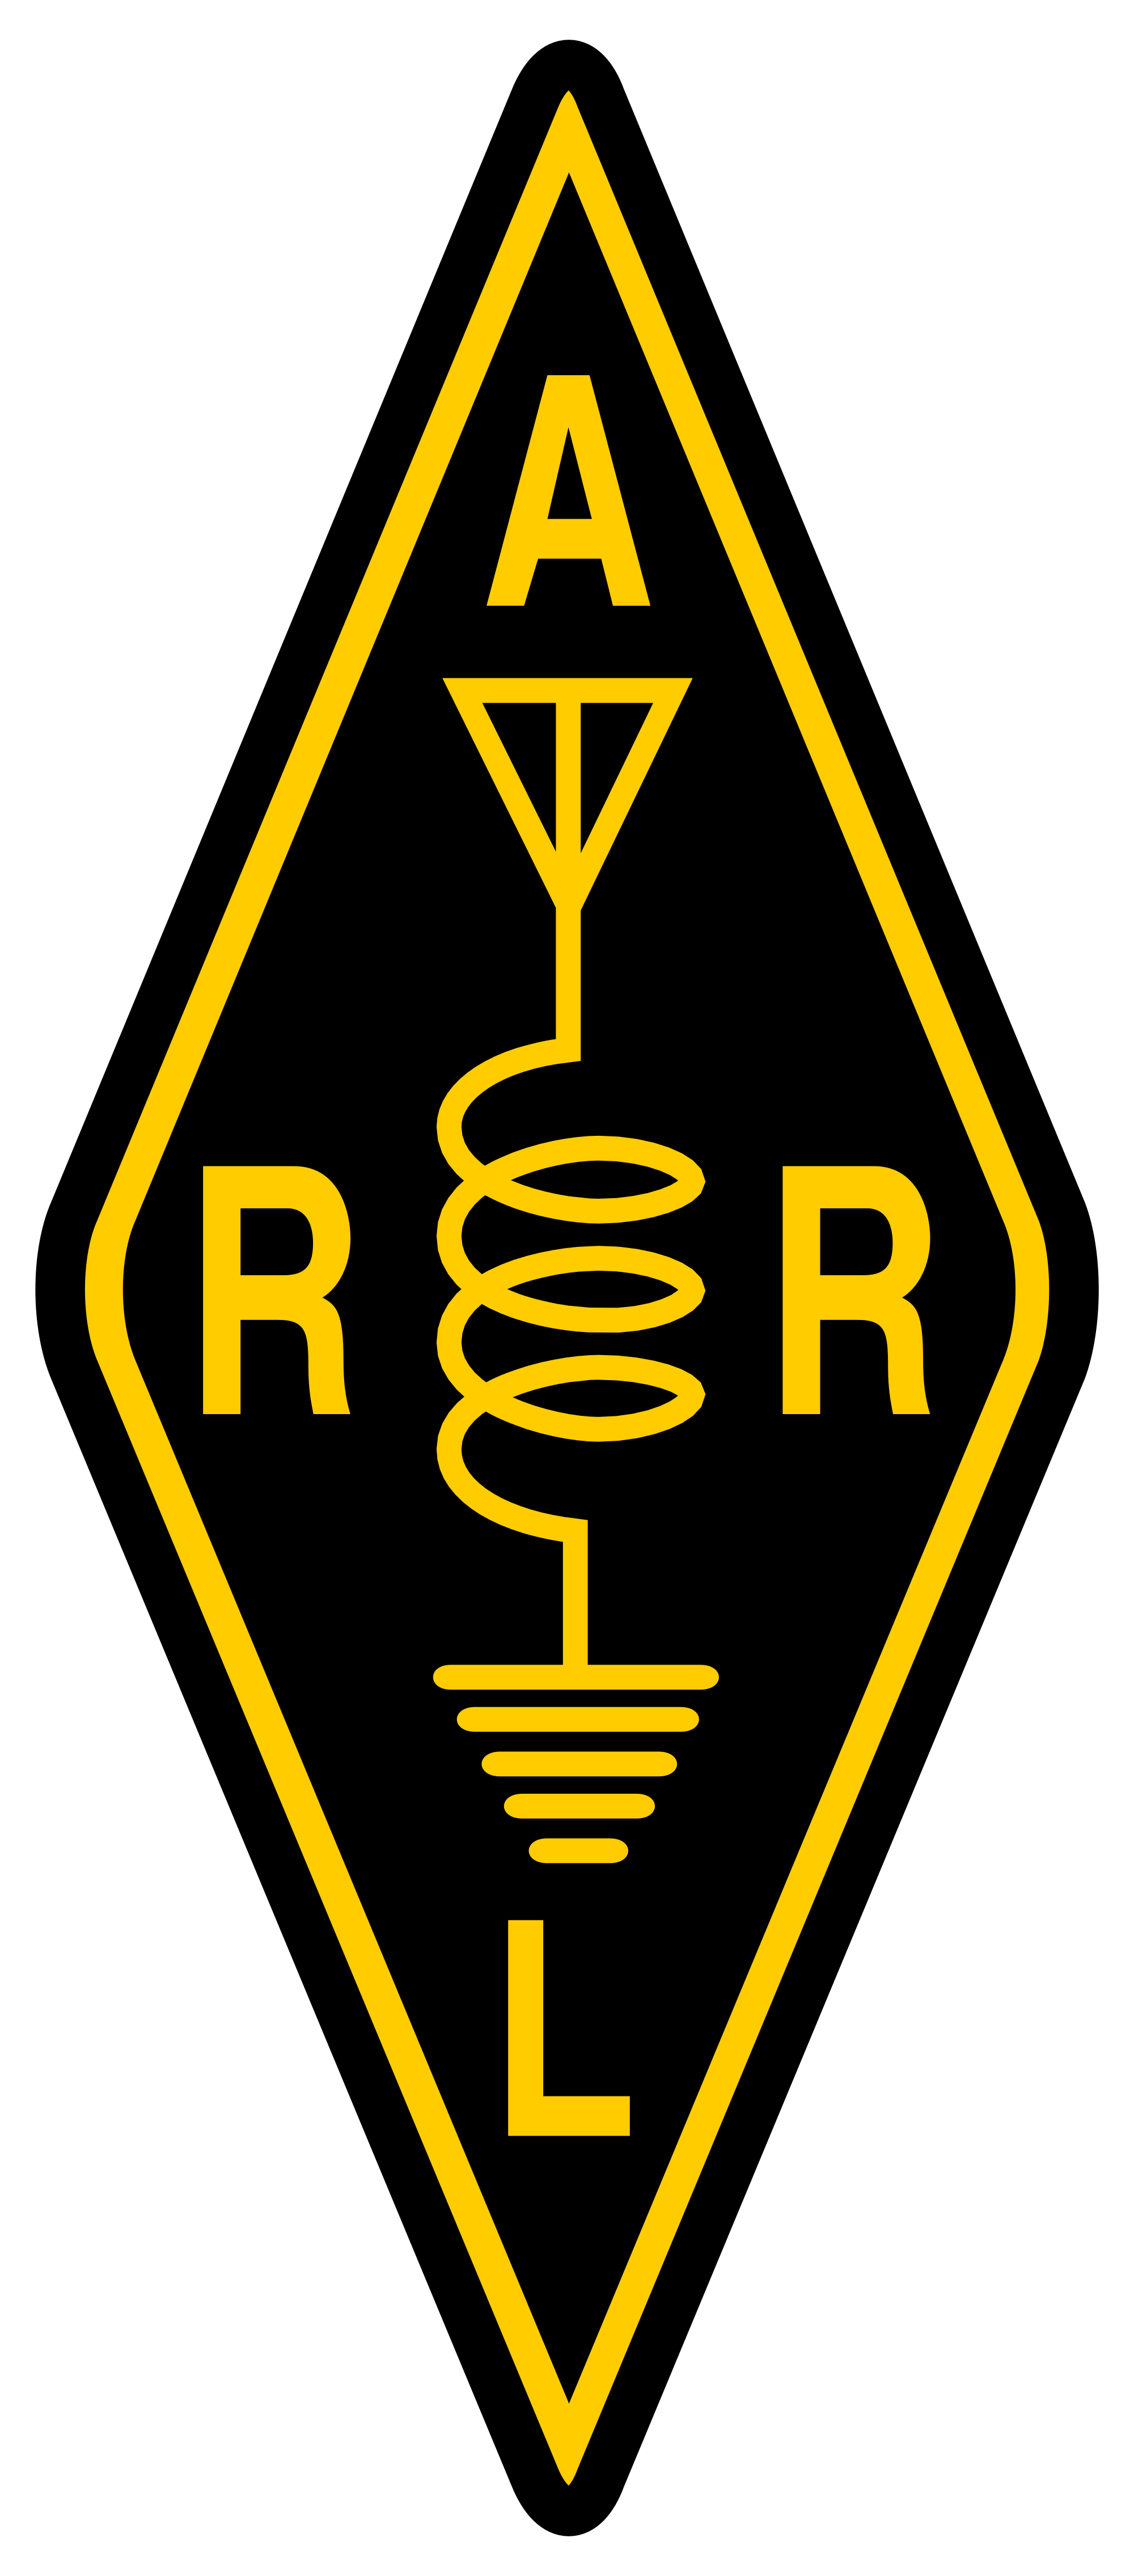 ARRL_logo